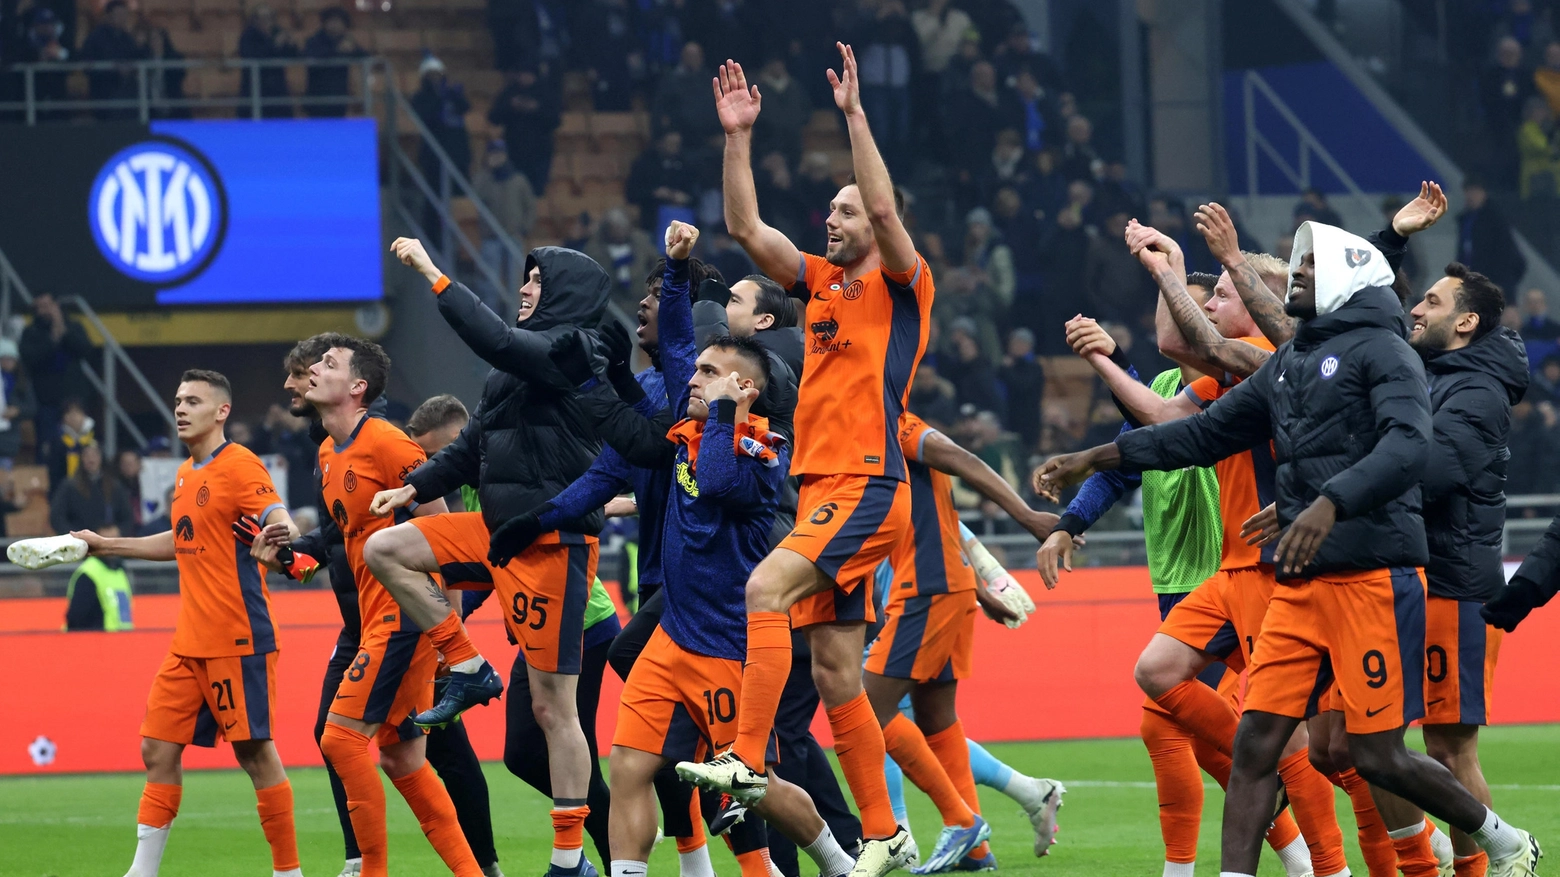 L'Inter sotto la curva a festeggiare la vittoria con la Salernitana